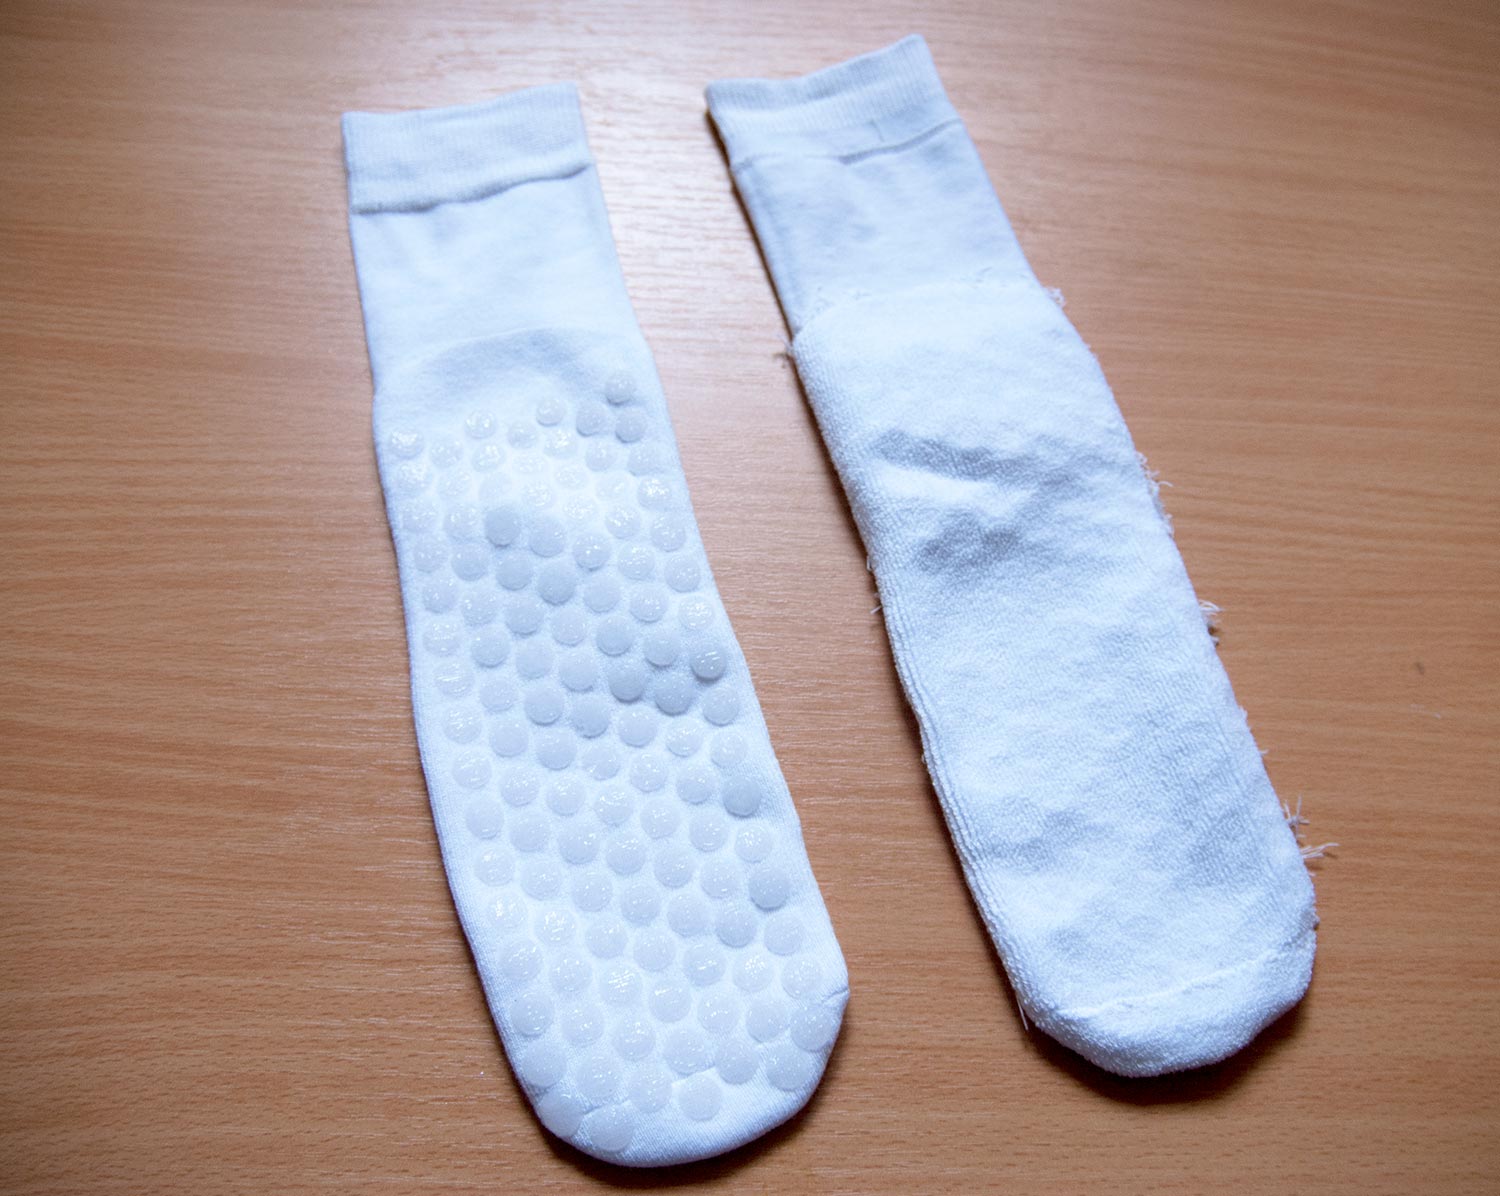 Настоящие носки для космонавтов. ©bracatus.com